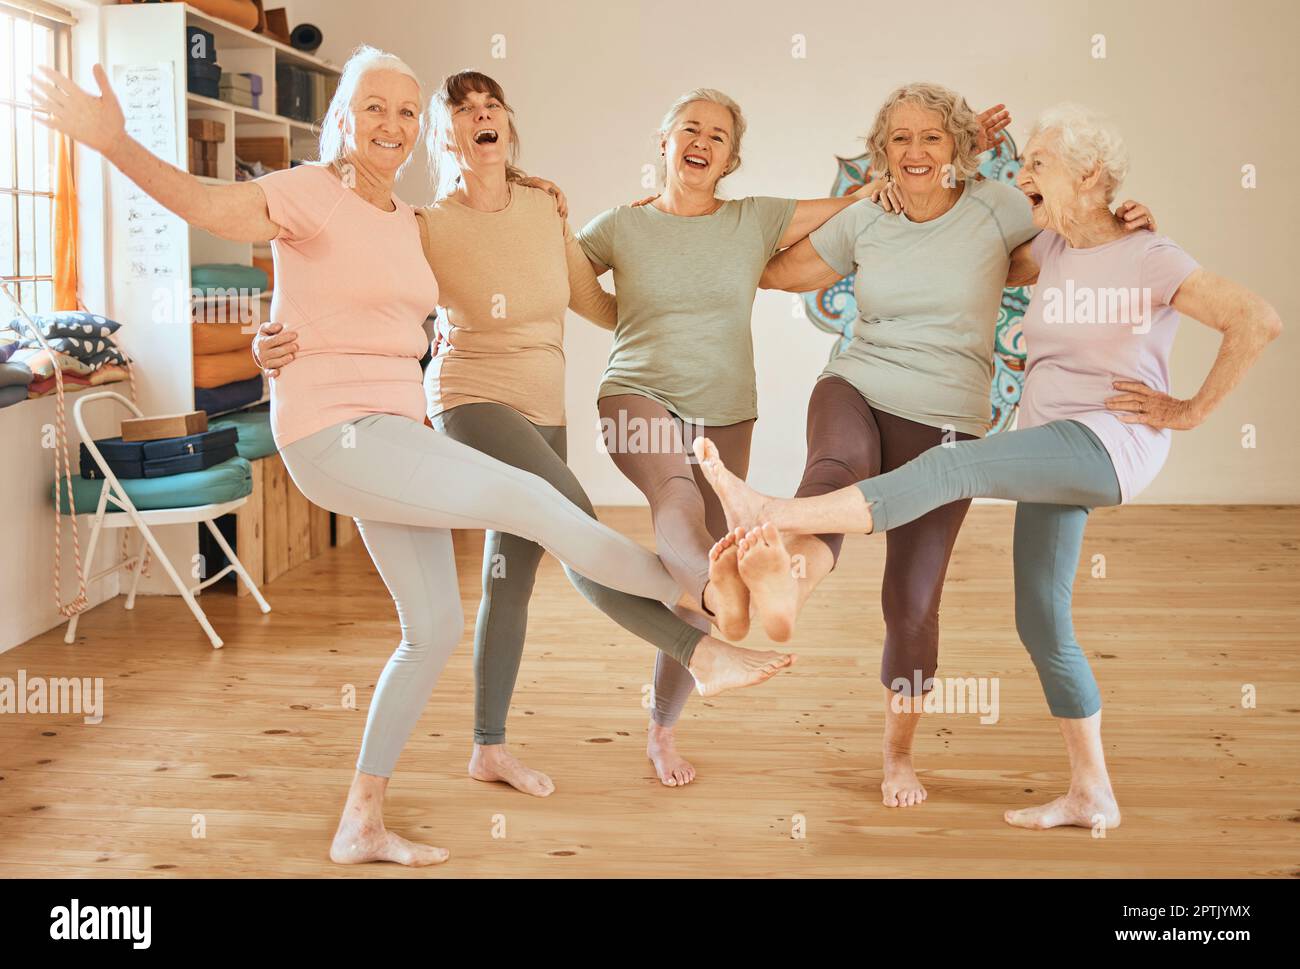 Amici, fitness e danza con un gruppo di donne anziane che si divertono insieme in una lezione di esercizi. Palestra, benessere e salute con una squadra femminile matura trai Foto Stock